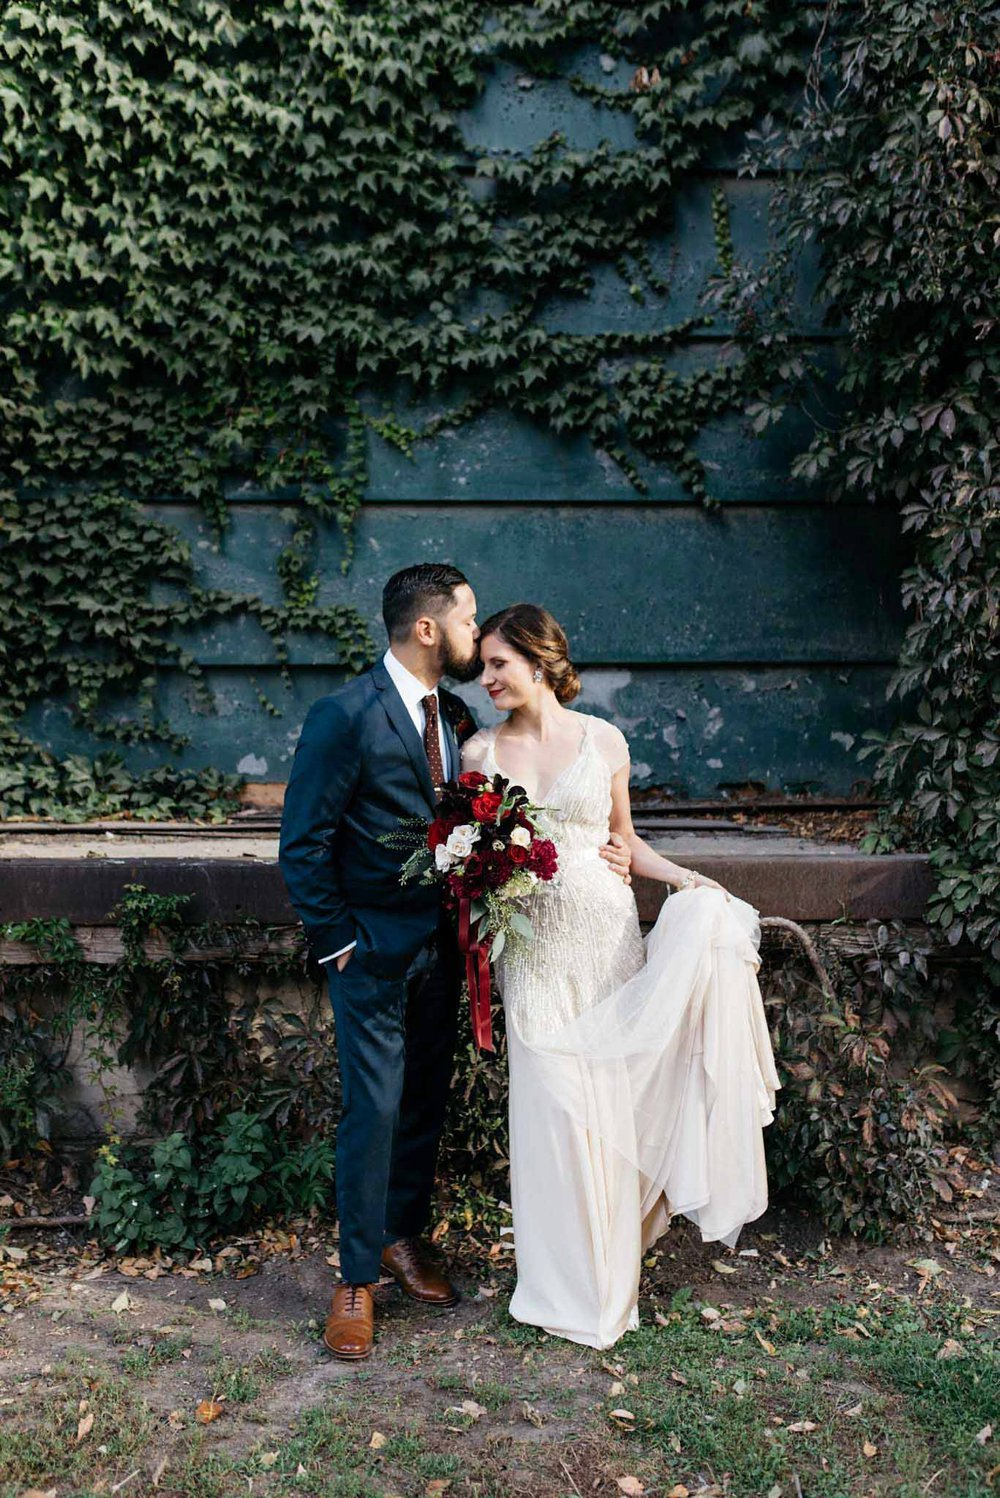 Toronto wedding photographer | Olive Photography